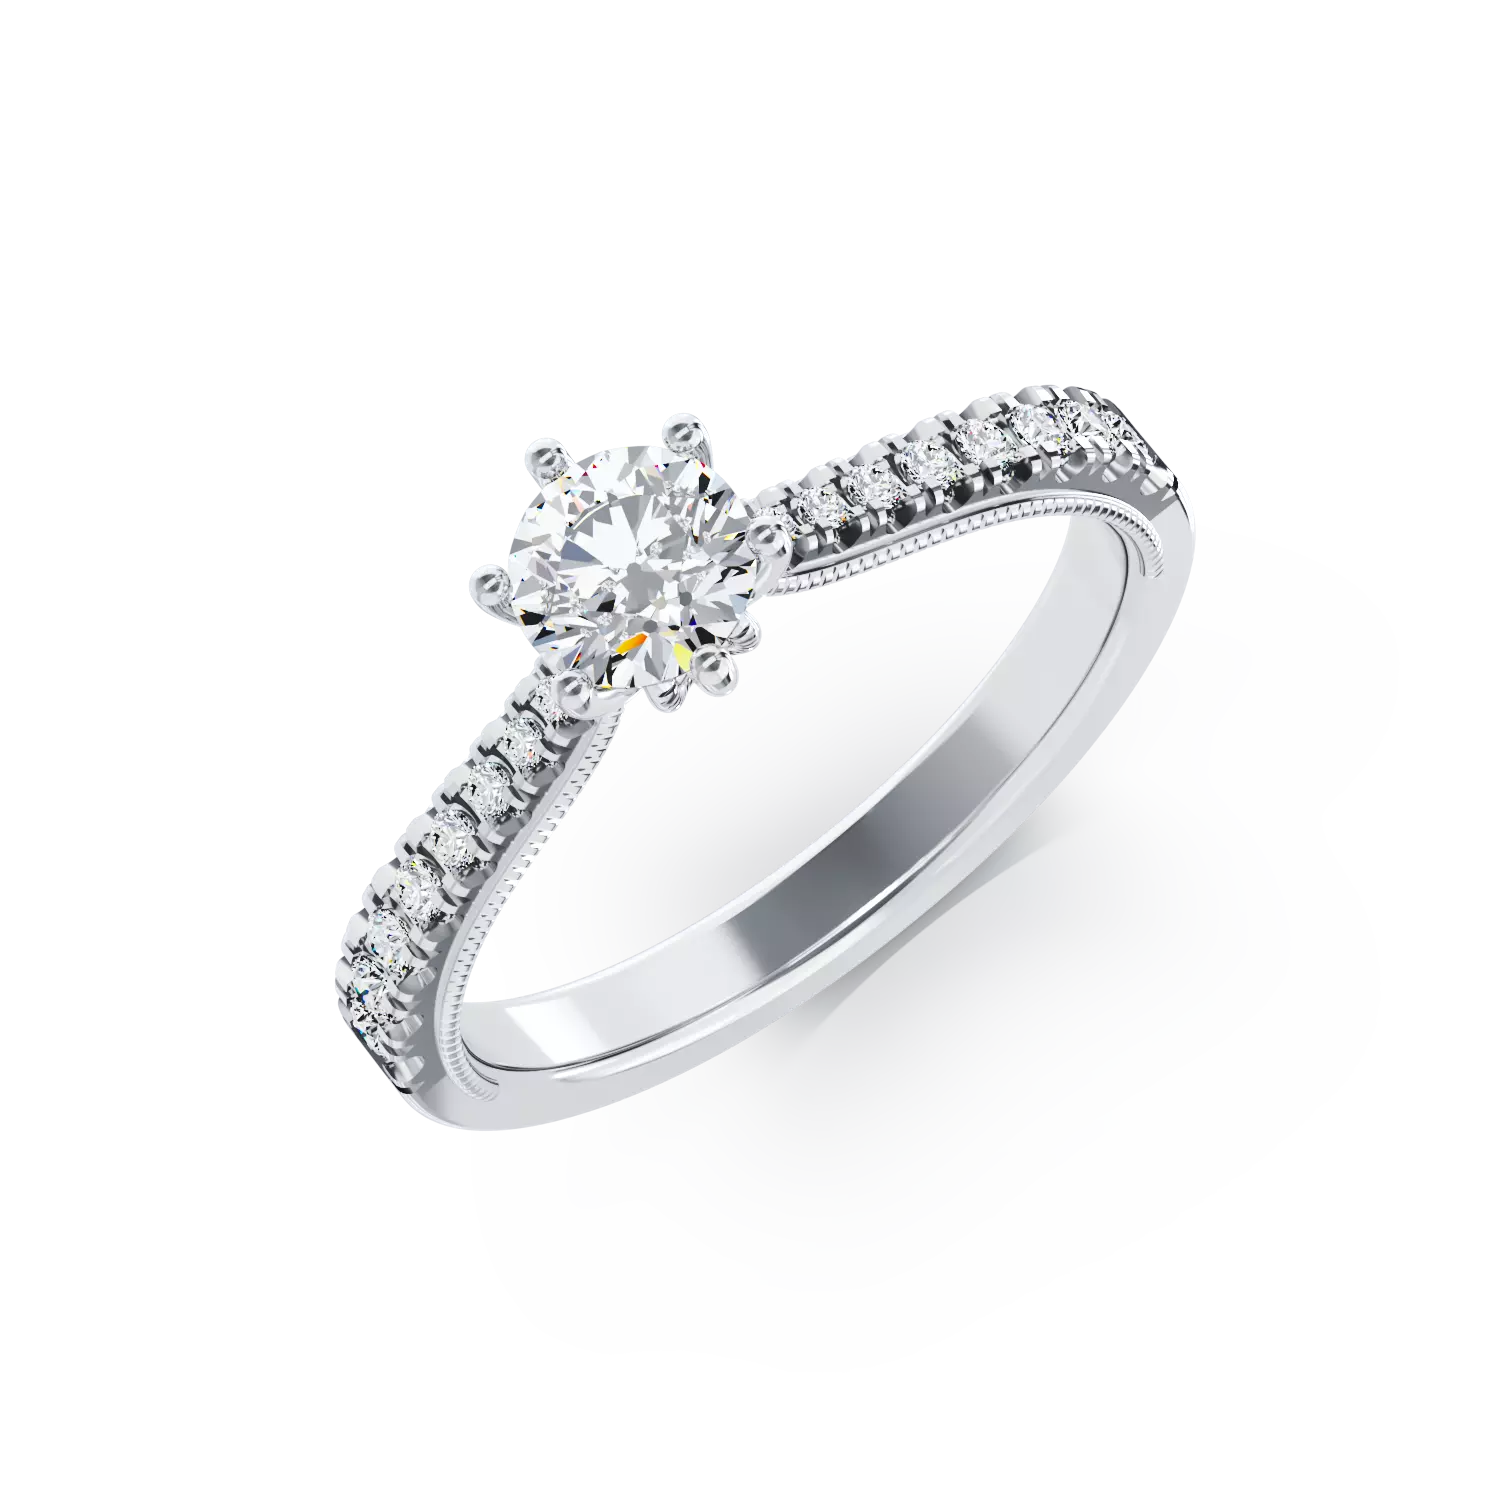 Eljegyzési gyűrű 18K-os fehér aranyból 0,15ct gyémánttal és 0,18ct gyémánttal. Gramm: 2,39